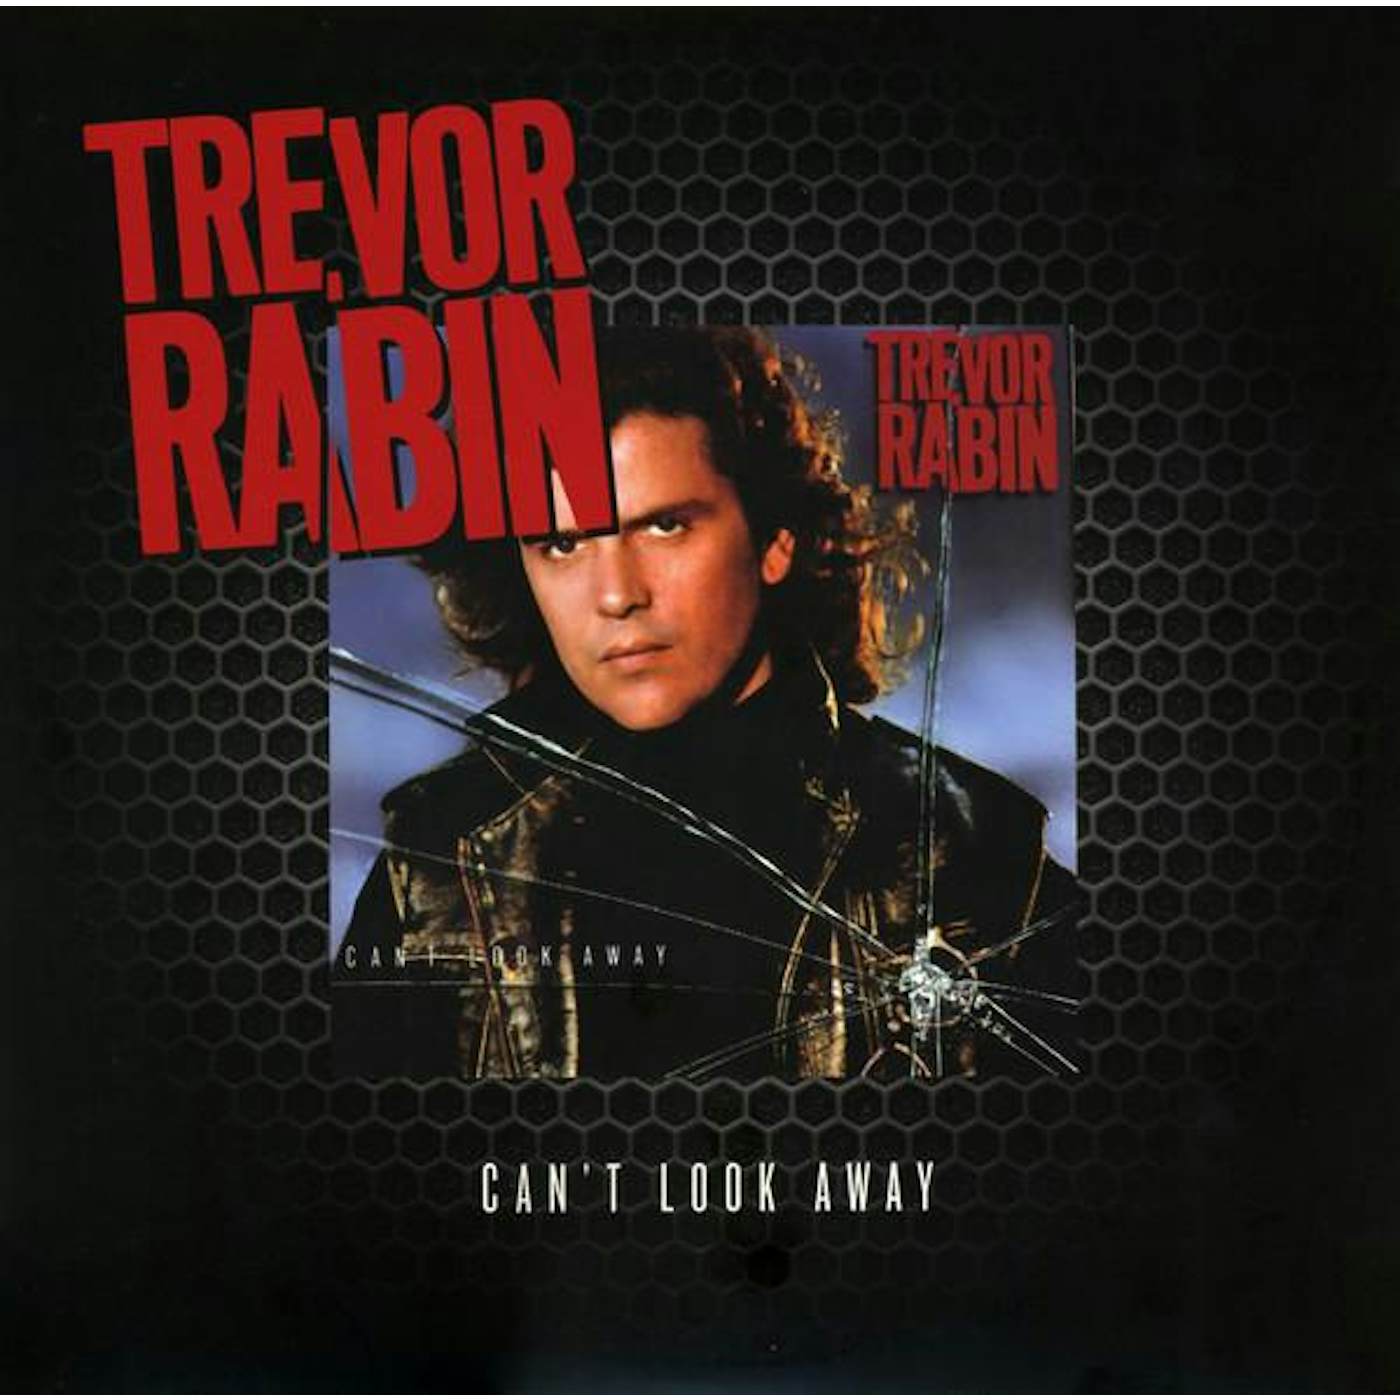 Trevor Rabin CAN'T LOOK AWAY Vinyl Record